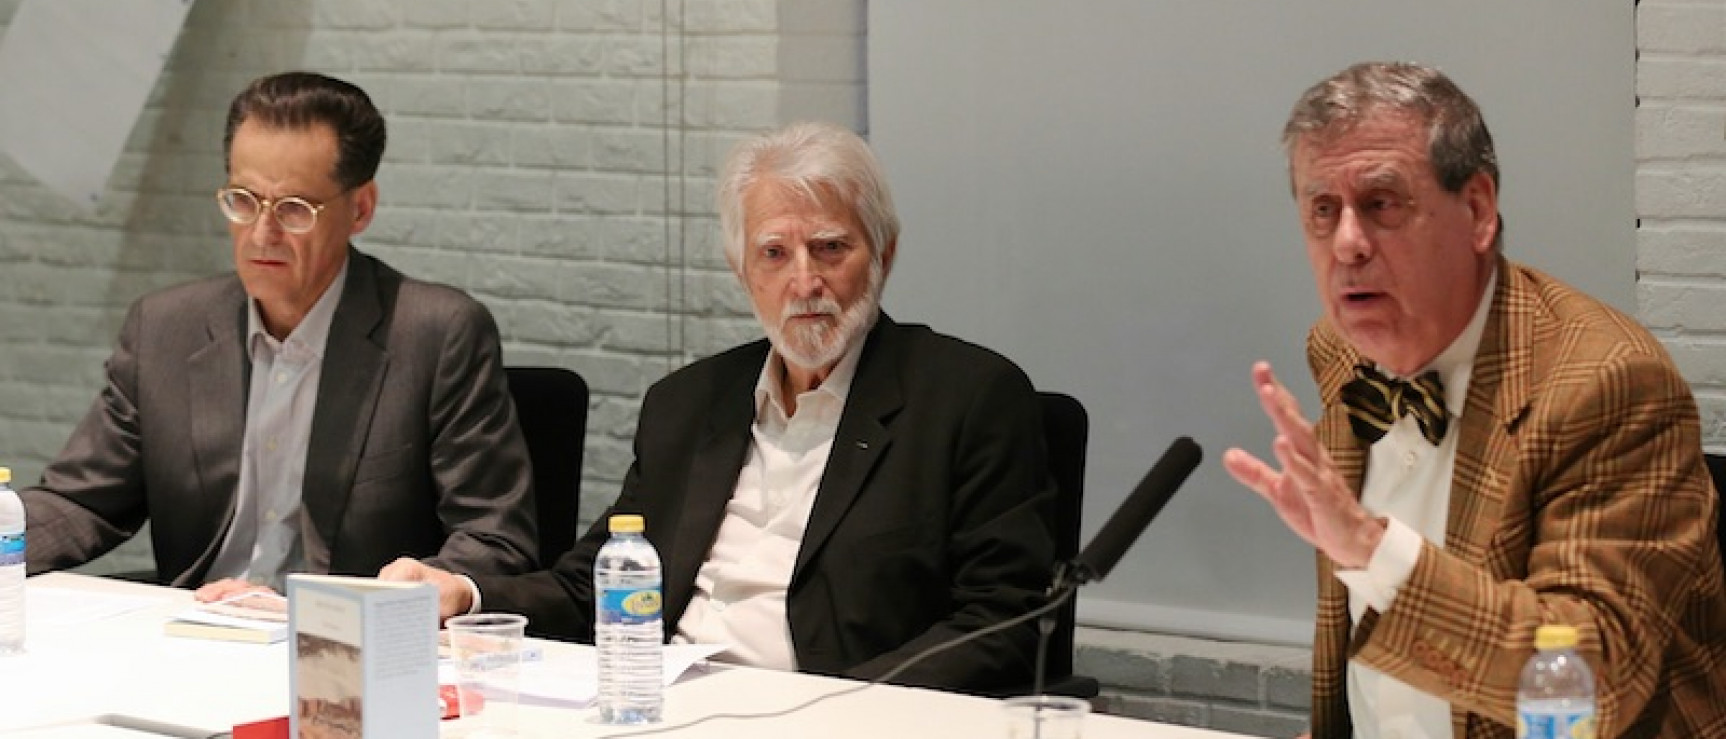 Miguel Sáenz (centro) durante la presentación.